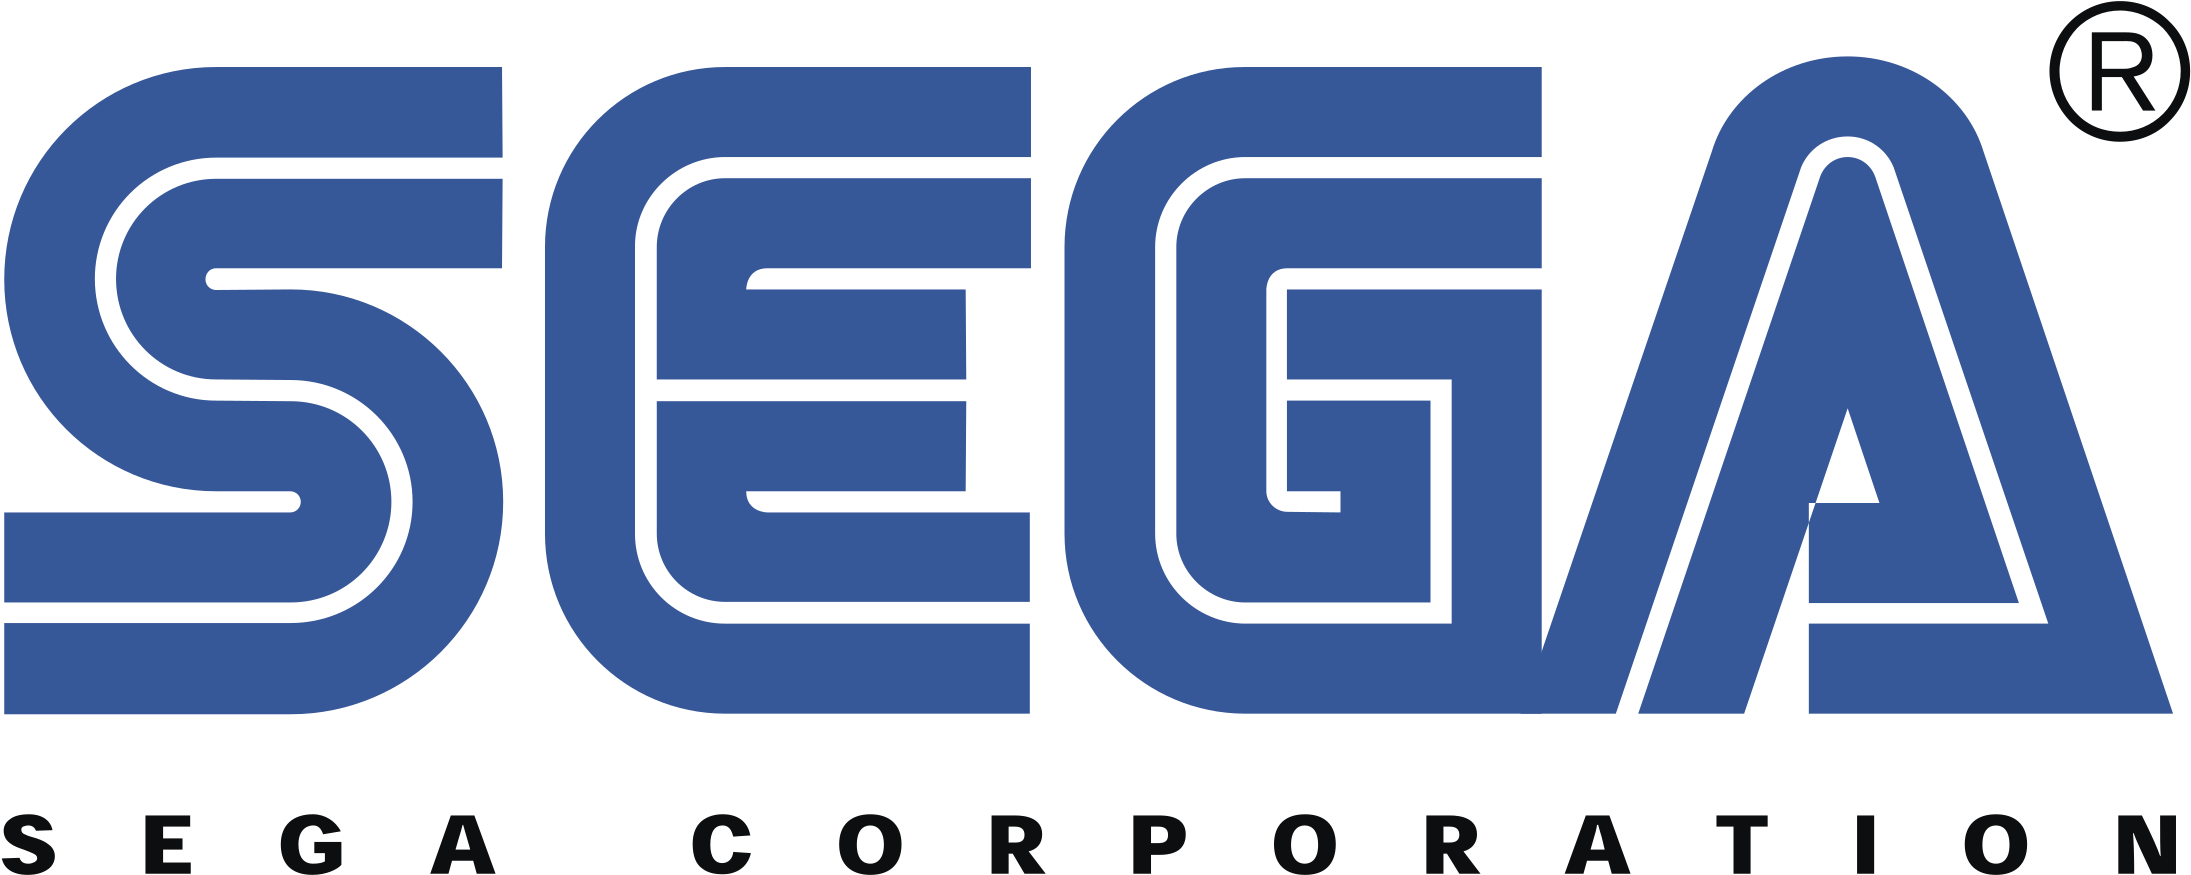 Sega PNG Image